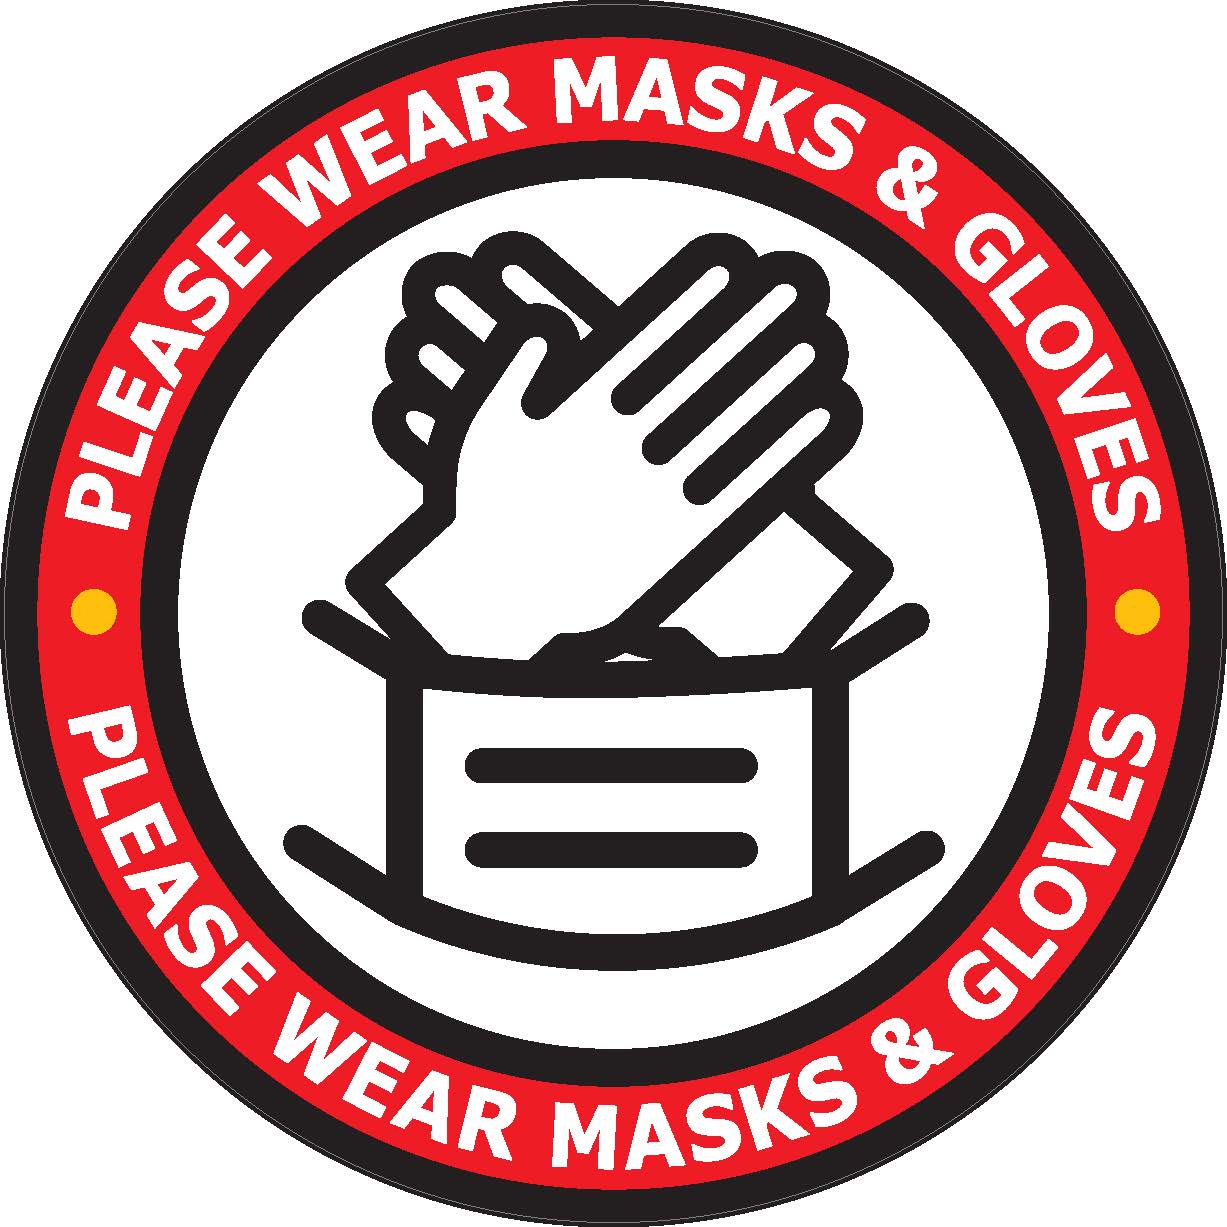 Please Wear Masks & Gloves